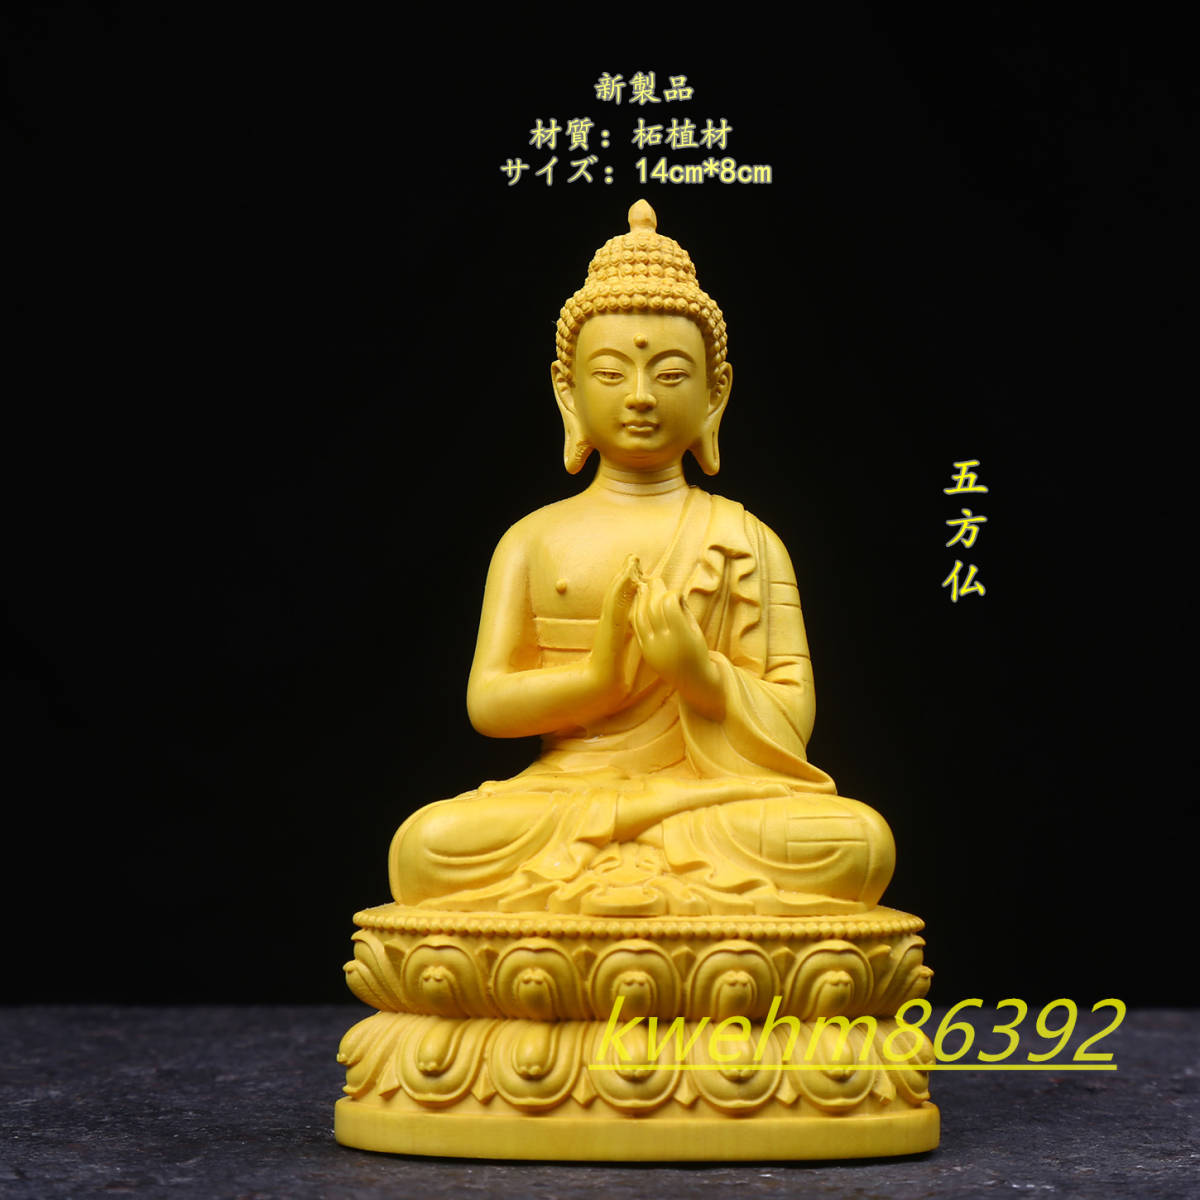 木彫り 仏像 七仏座像1セット 財前彫刻 仏教工芸品 総柘植材 仏師で仕上げ-